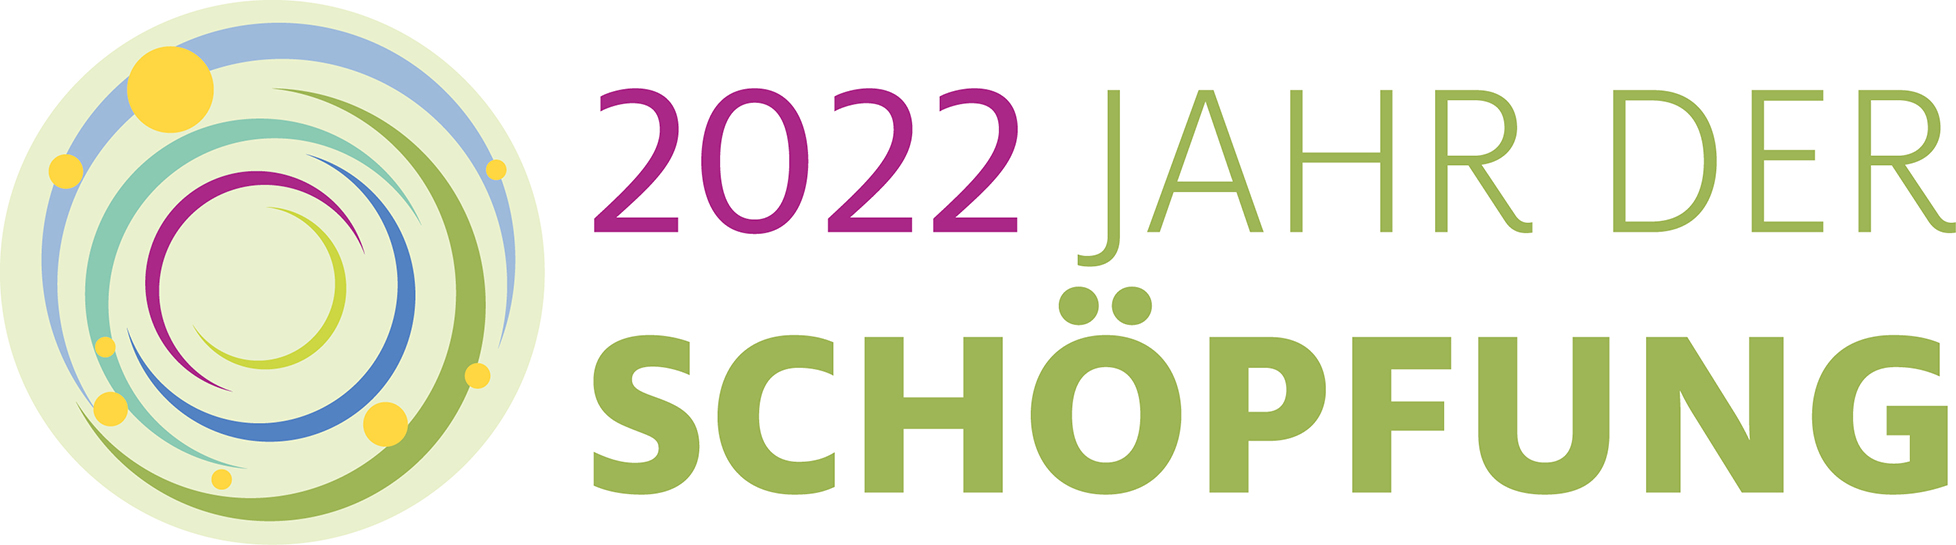 Jahr der Schöpfung 2022 Logo mit Text (Grafik: Hilde Matouschek)